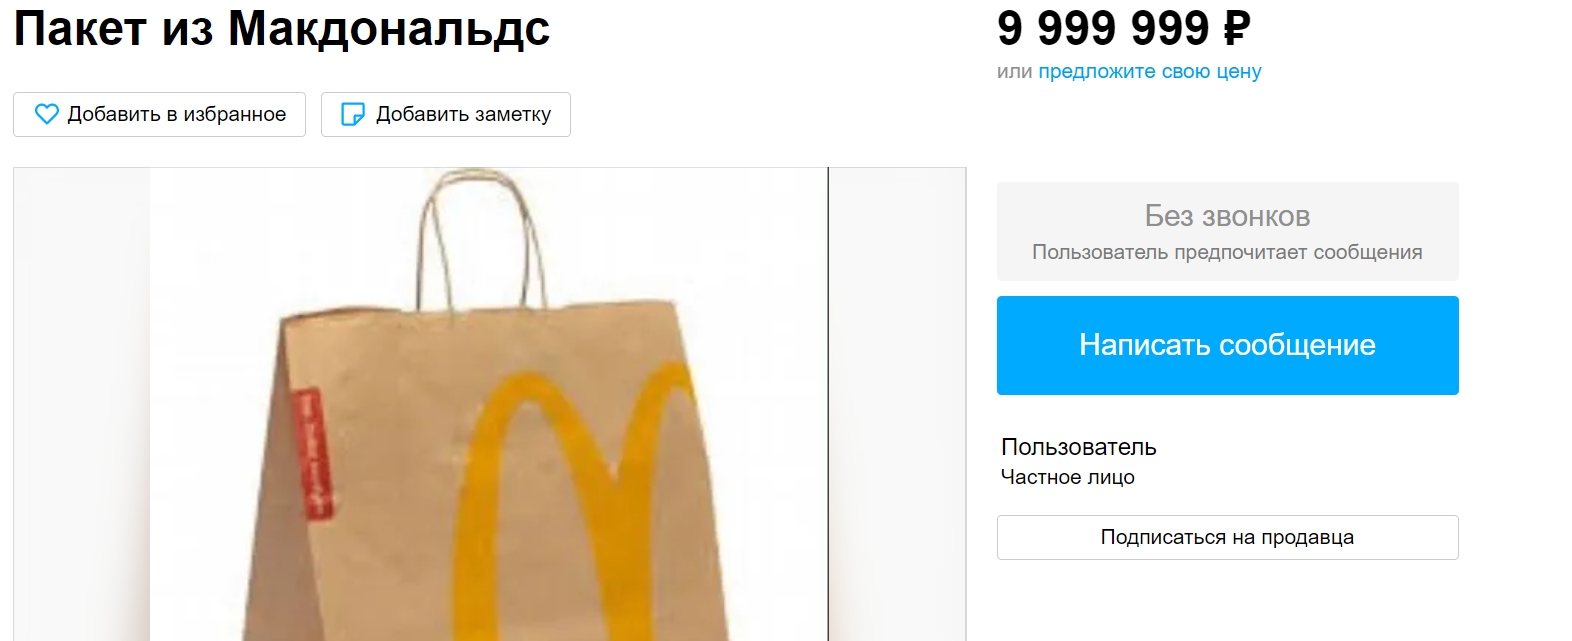 21 11 2022 154406 Астраханец предлагает обменять пакет из Макдональдс на квартиру в Москве